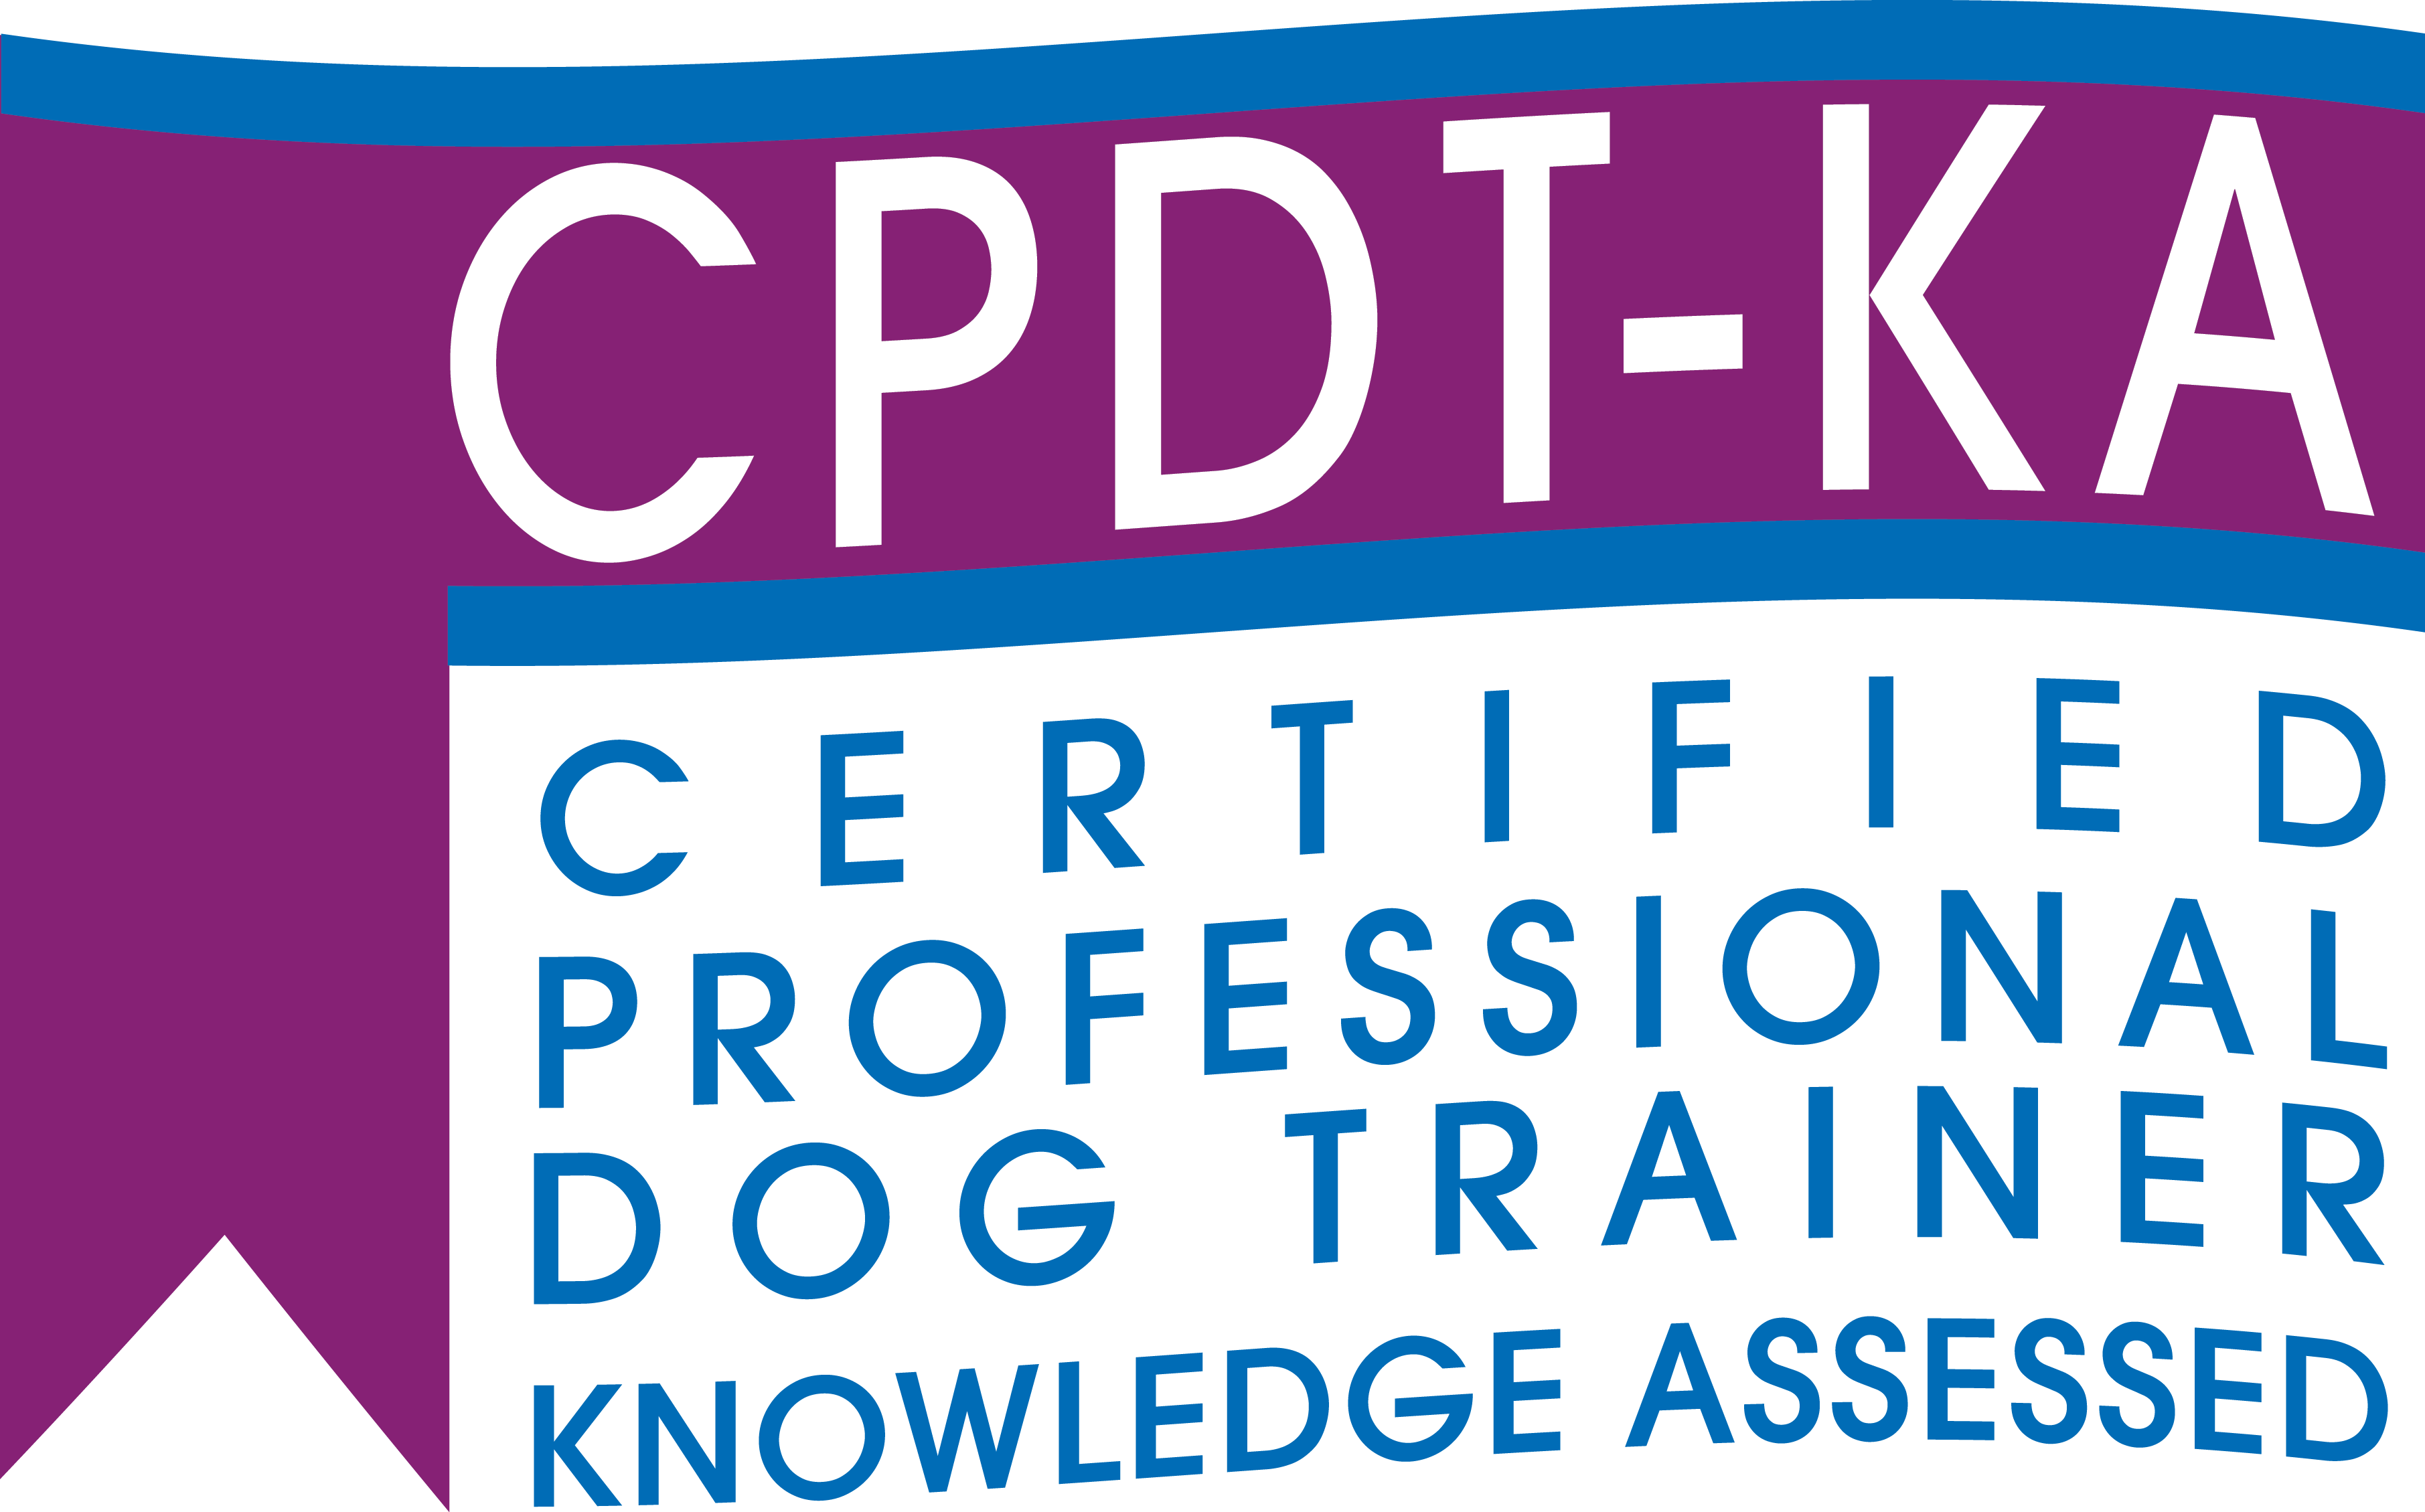 Cpdt Logo - cpdt-ka-logo - Become a Professional Dog Trainer